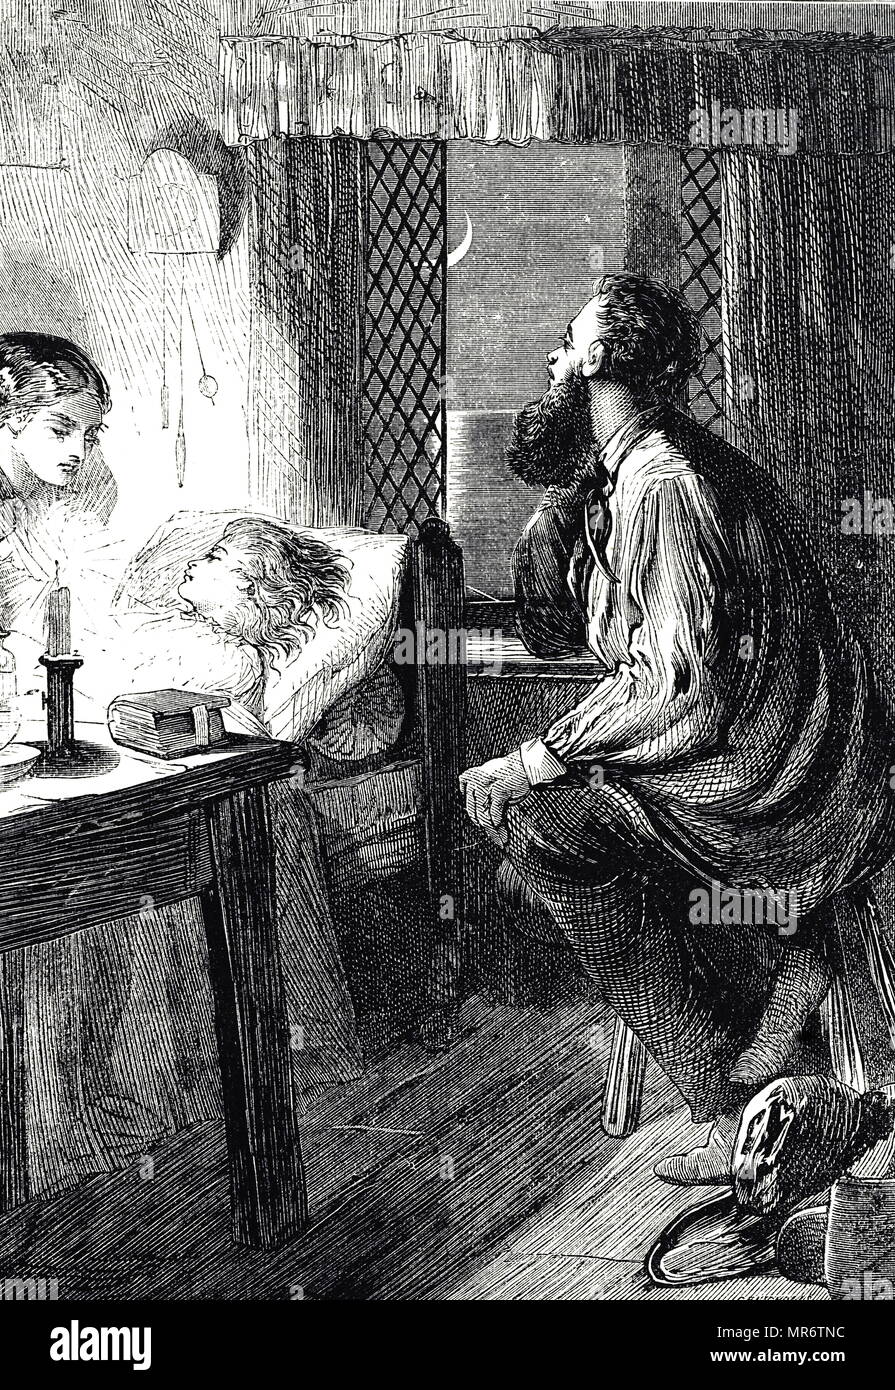 Gravur, die Eltern sitzen neben dem Bett ihres kranken Kindes. Illustrierte Charles Joseph Staniland (1838-1916) Ein britischer Künstler. Vom 19. Jahrhundert Stockfoto